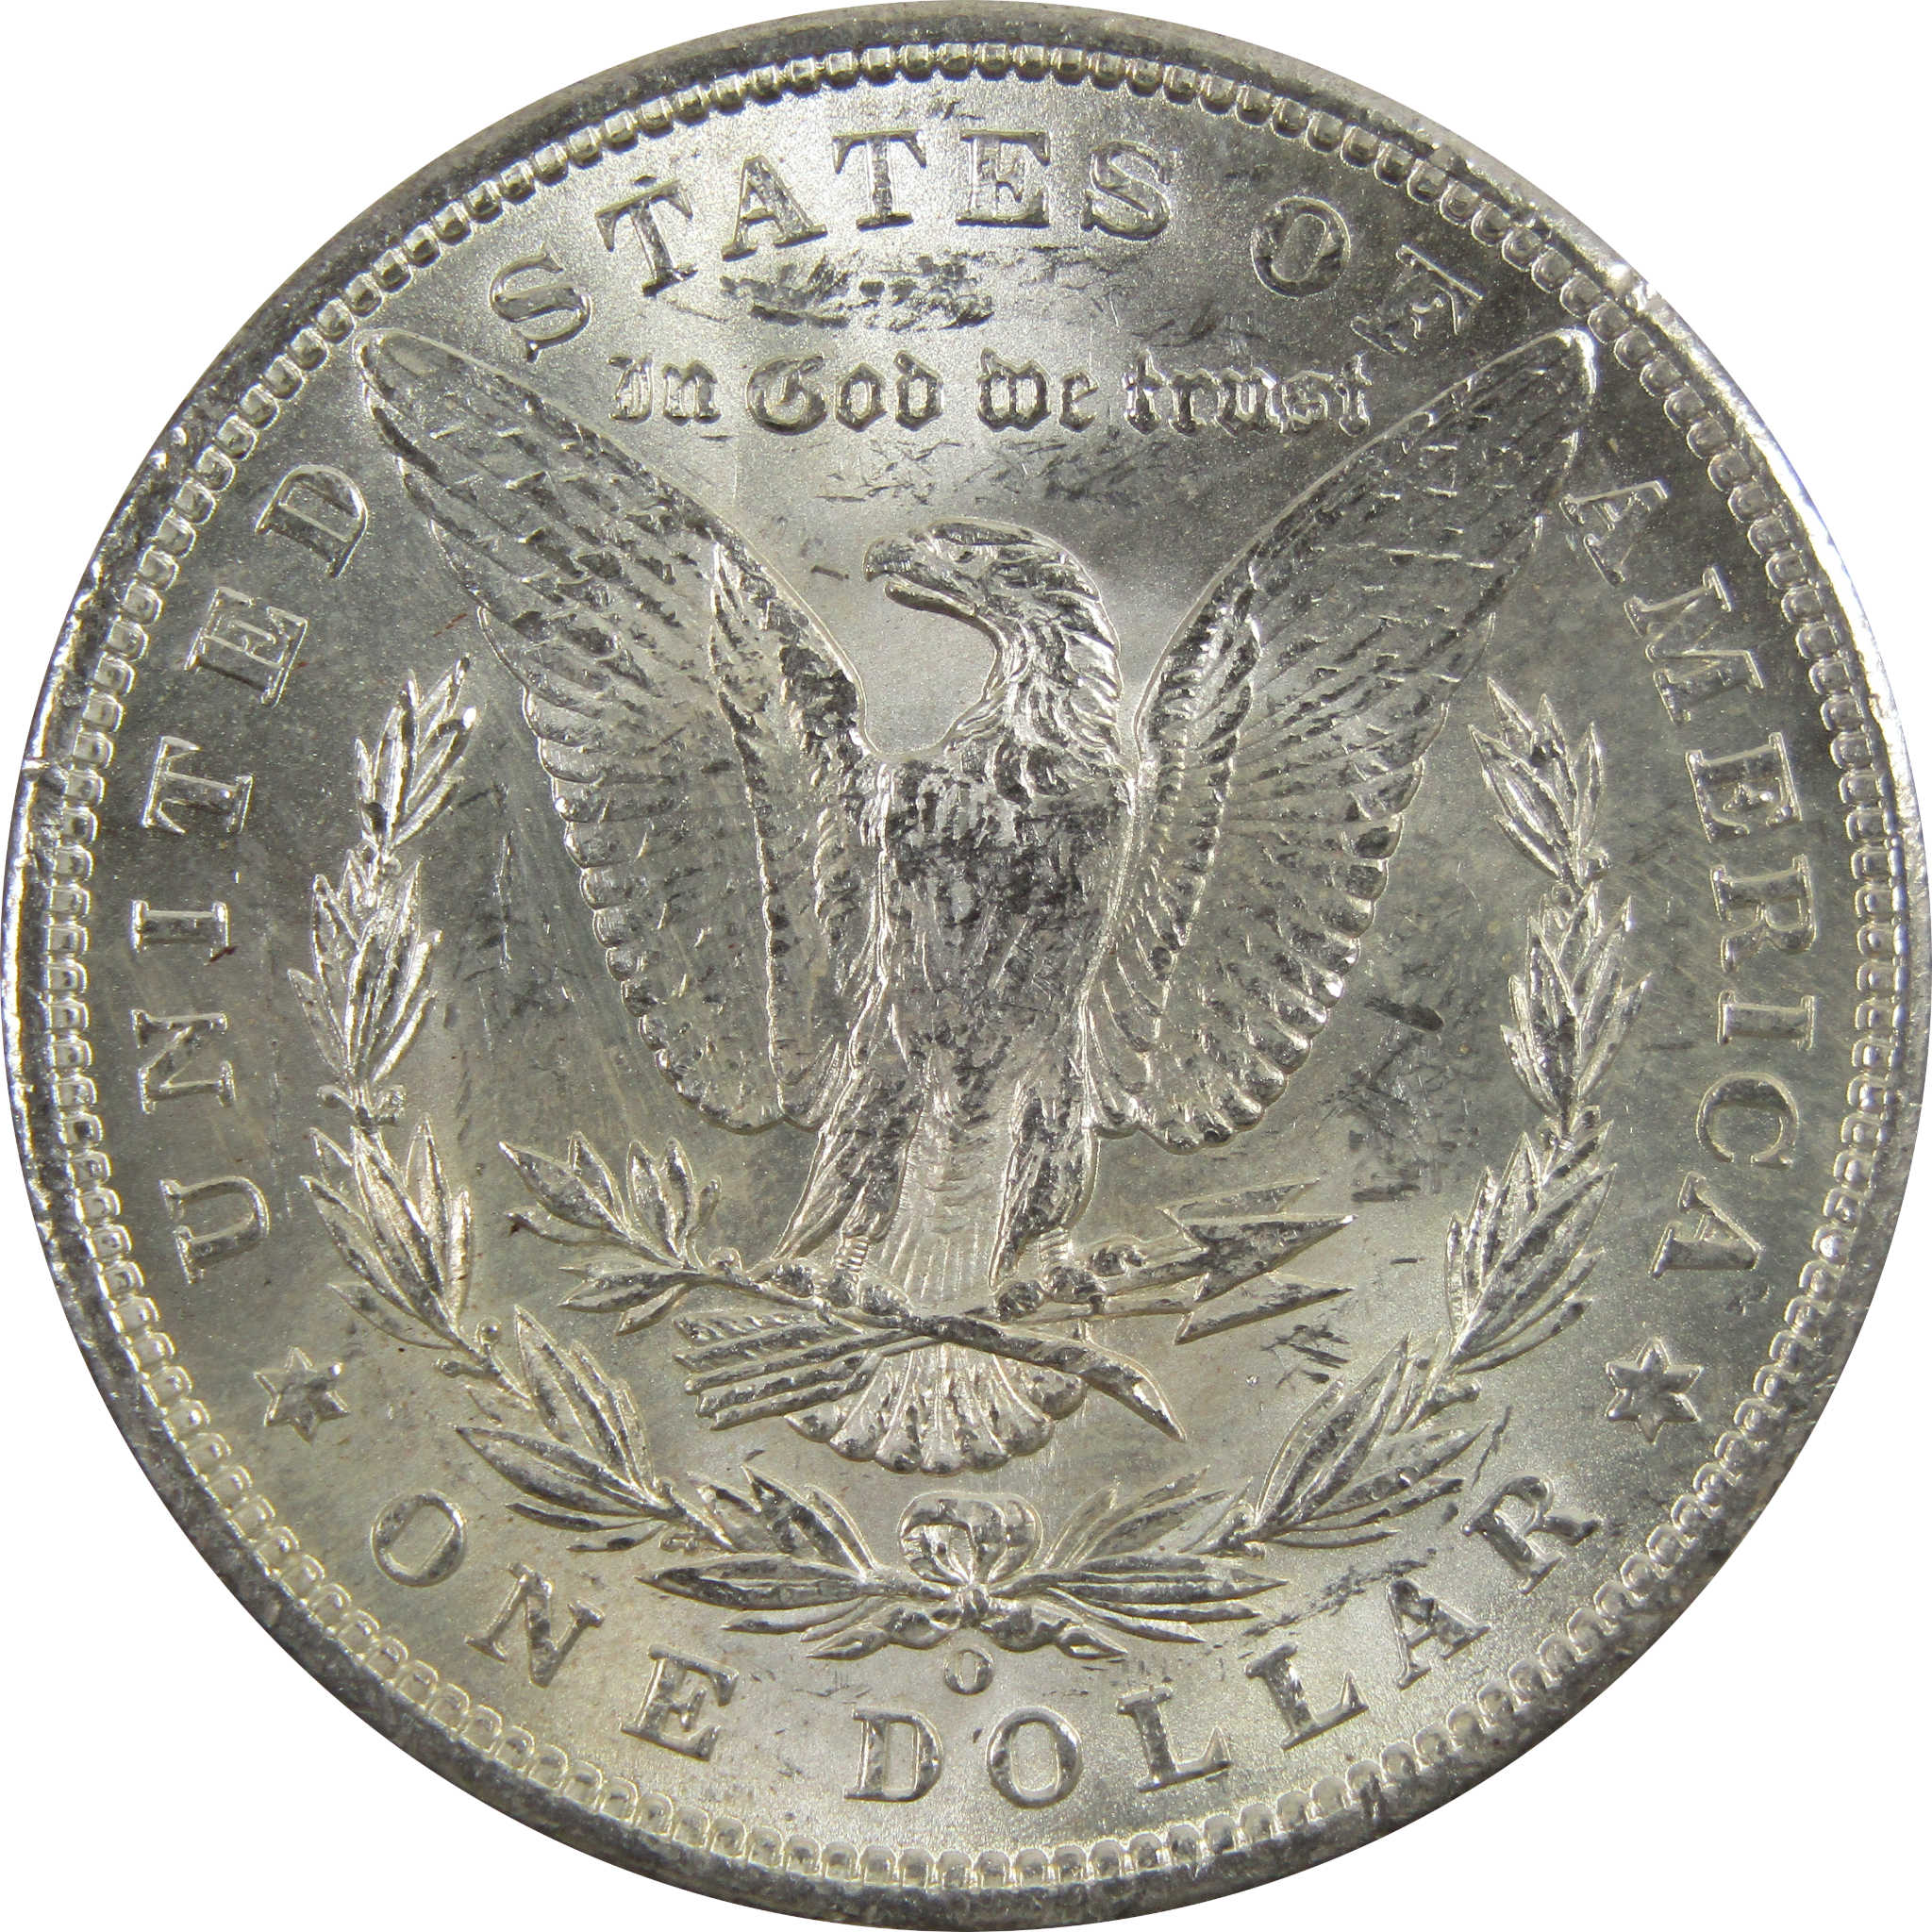 1898 O Morgan Dollar BU Uncirculated 90% Silver $1 Coin SKU:I5260 - Morgan coin - Morgan silver dollar - Morgan silver dollar for sale - Profile Coins &amp; Collectibles